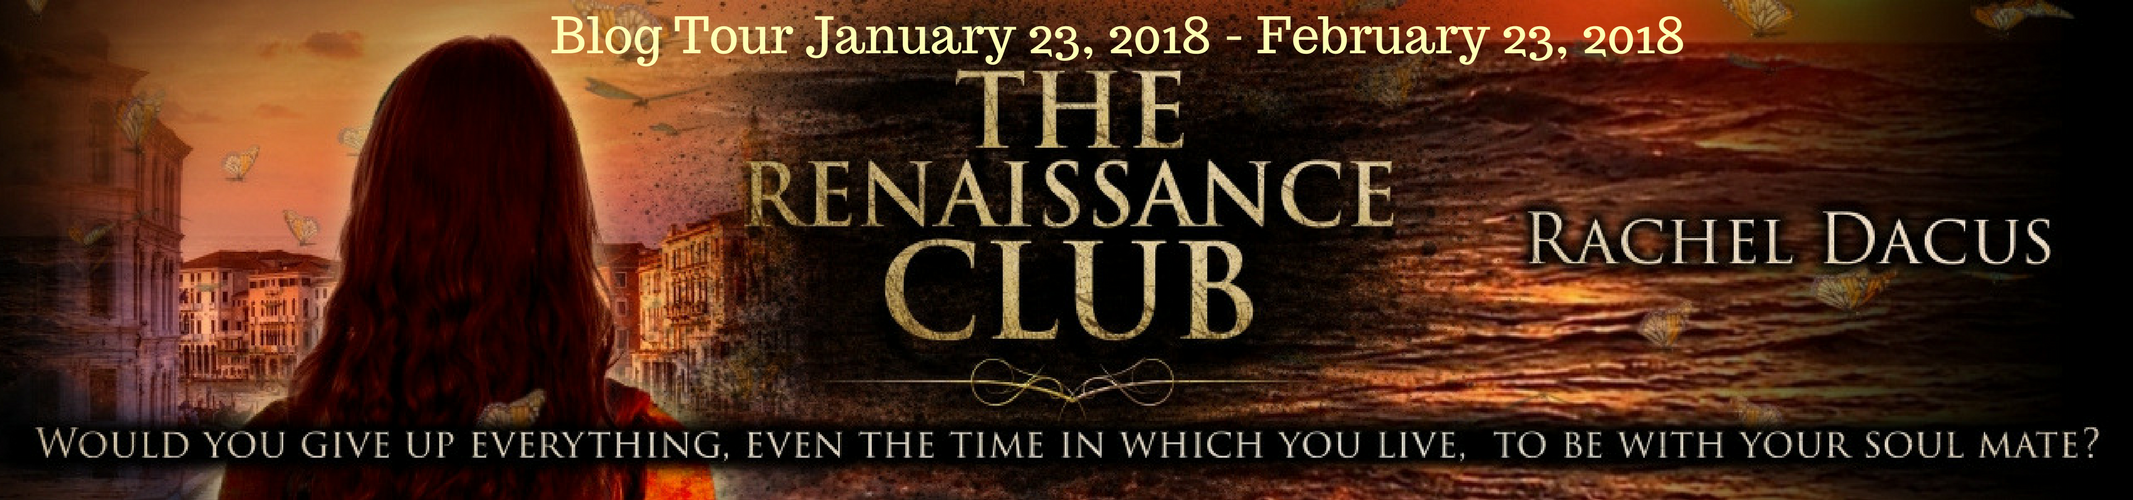 Blog Tour and Review: Rachel Dacus' The Renaissance Club